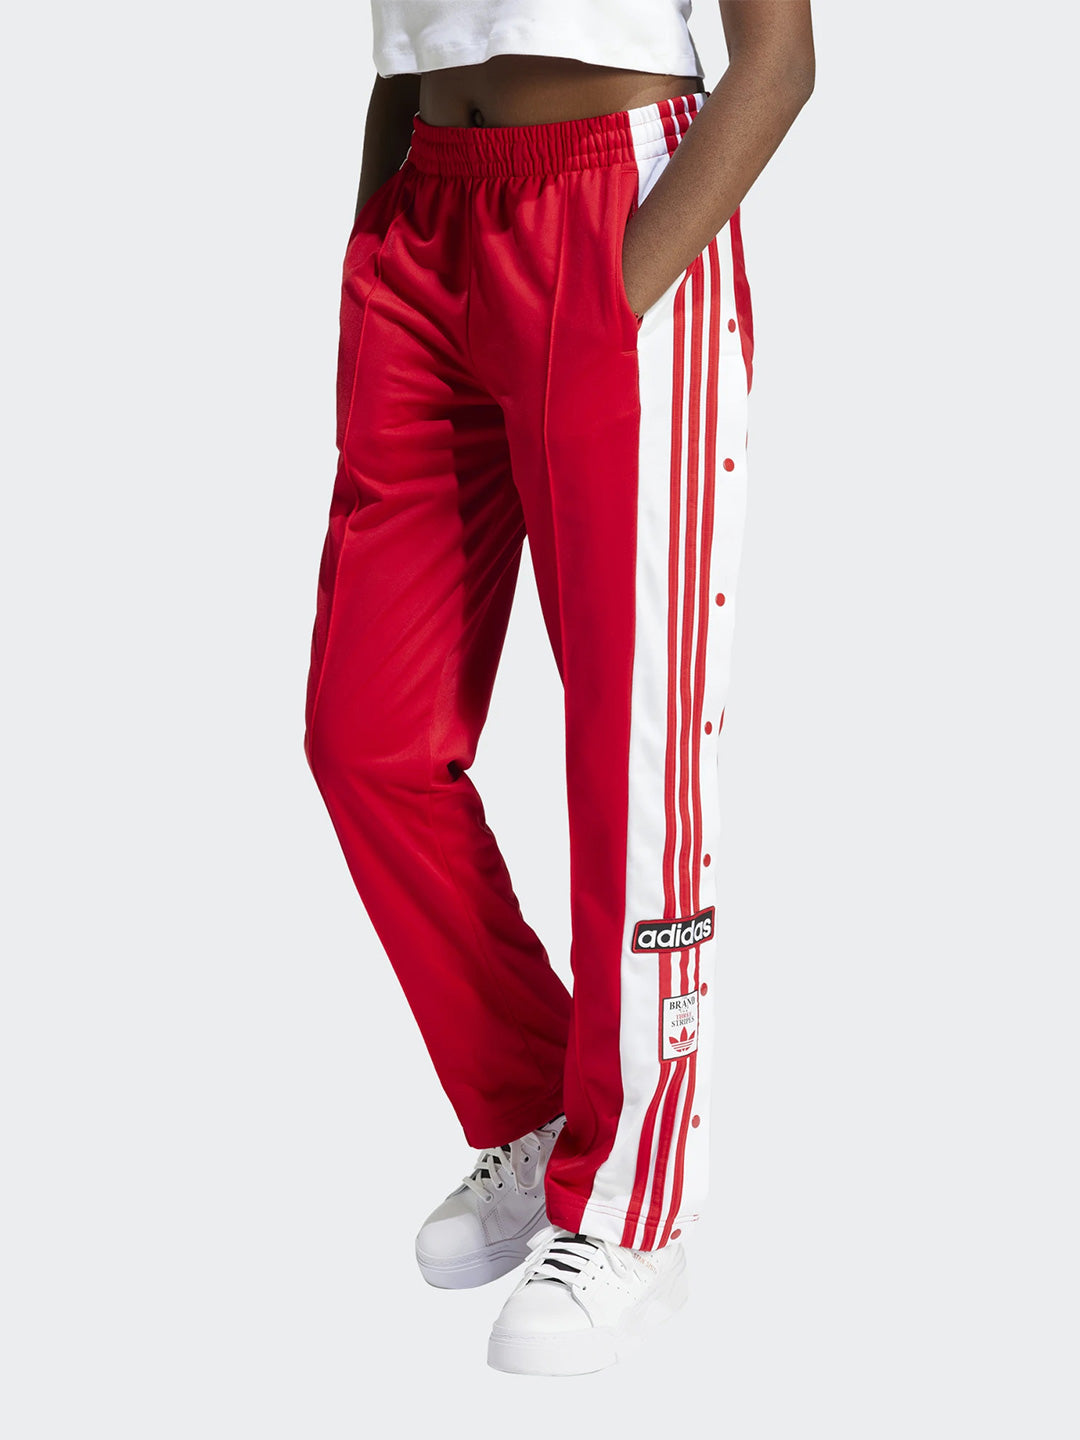 Adidas Adibreak pantaloni rosso con pannelli laterali